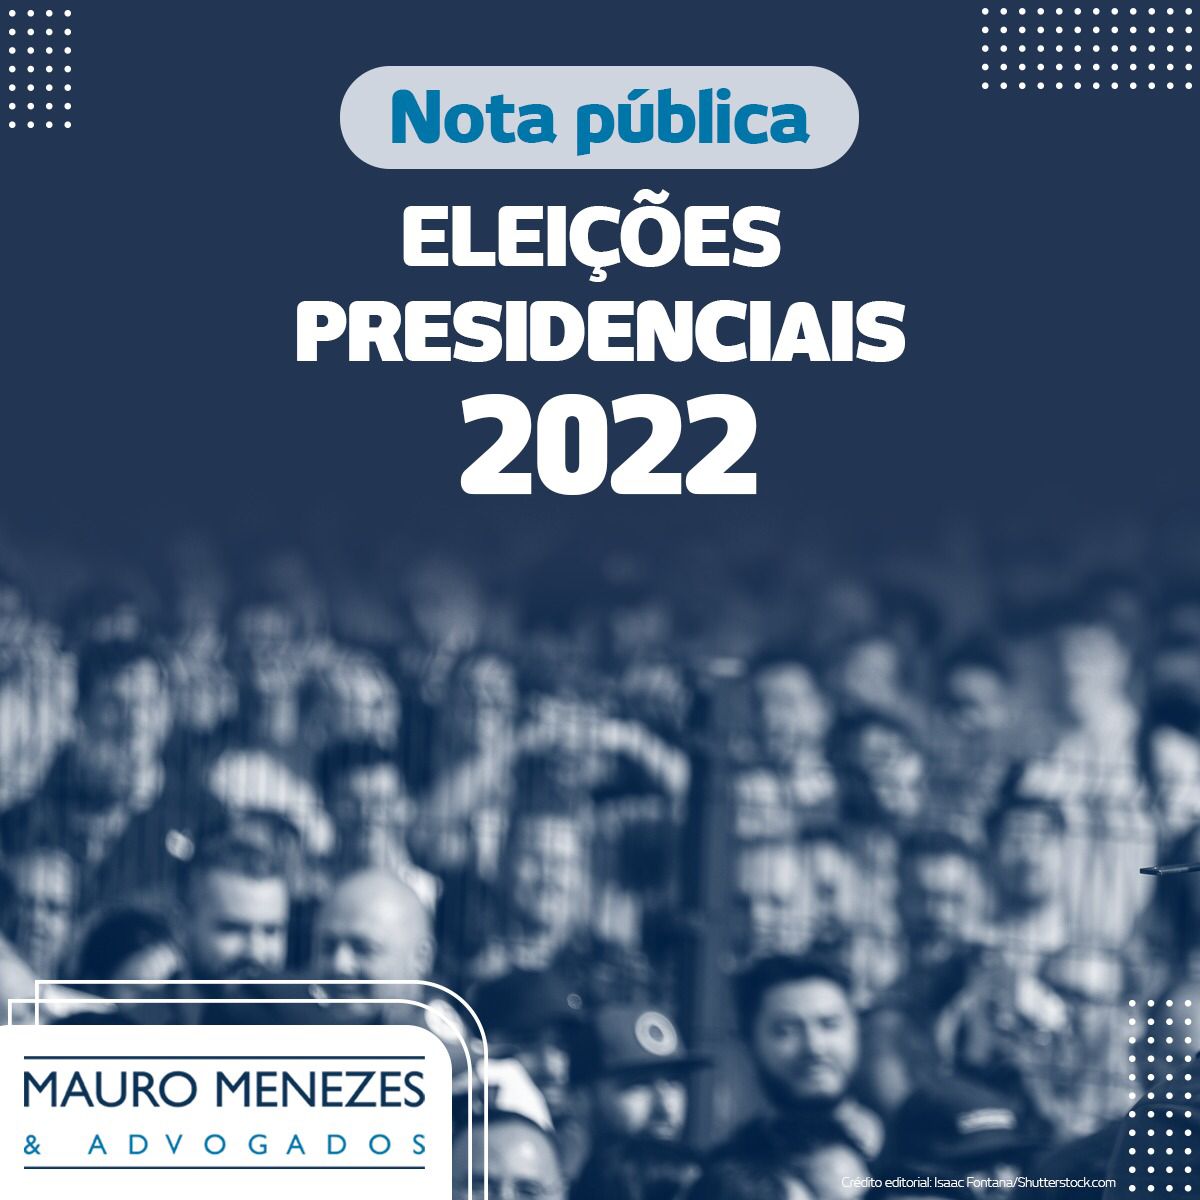 NOTA PÚBLICA: Eleições Presidenciais